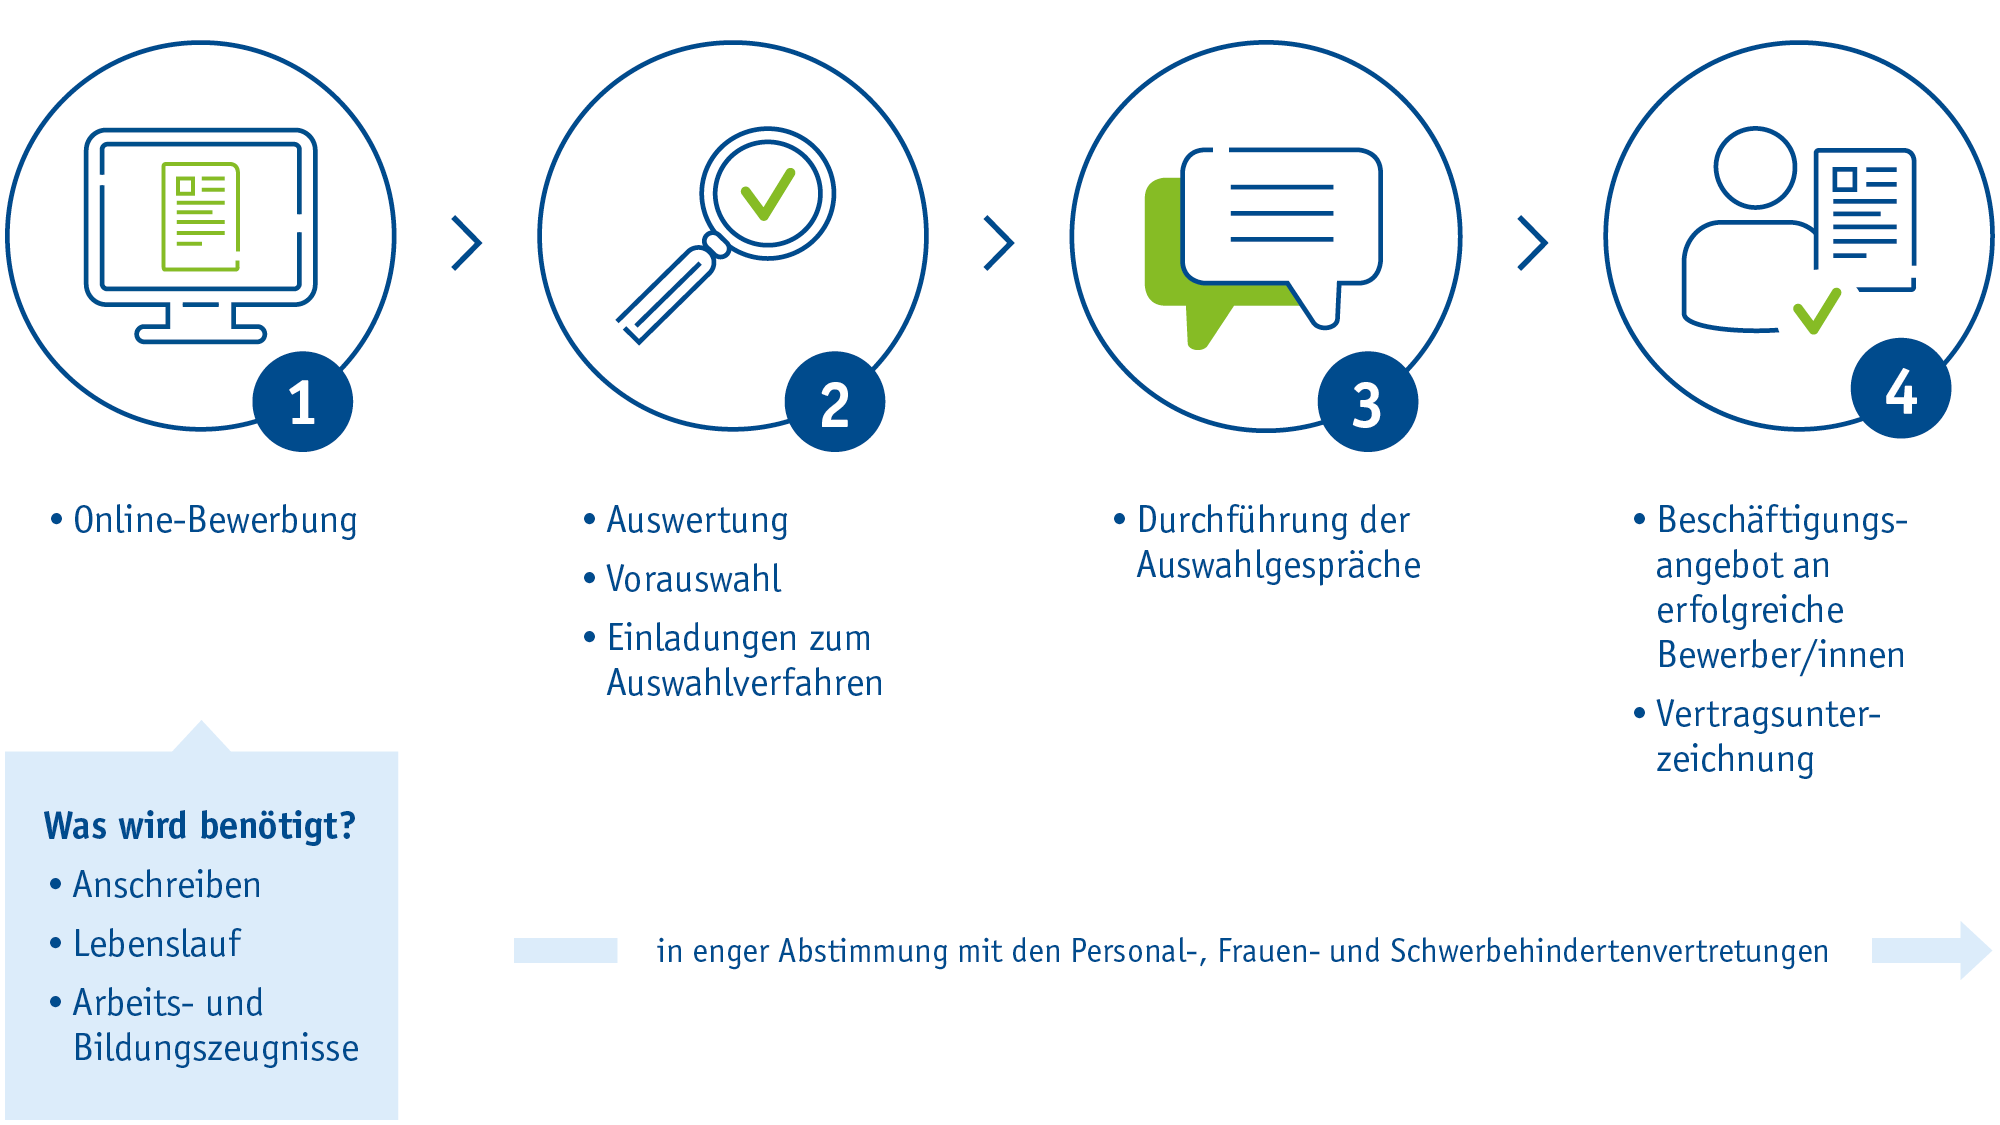 Dargestellt der Bewerbungsprozess für das ITDZ-Berlin .Bewerbungsprozess Schritt 1: Online Bewerbung Schritt 2: Einladung zum Bewerbungsgespräch Schritt 3: Durchführung der Auswahlgespräche Schritt 4: Vertragsunterzeichung